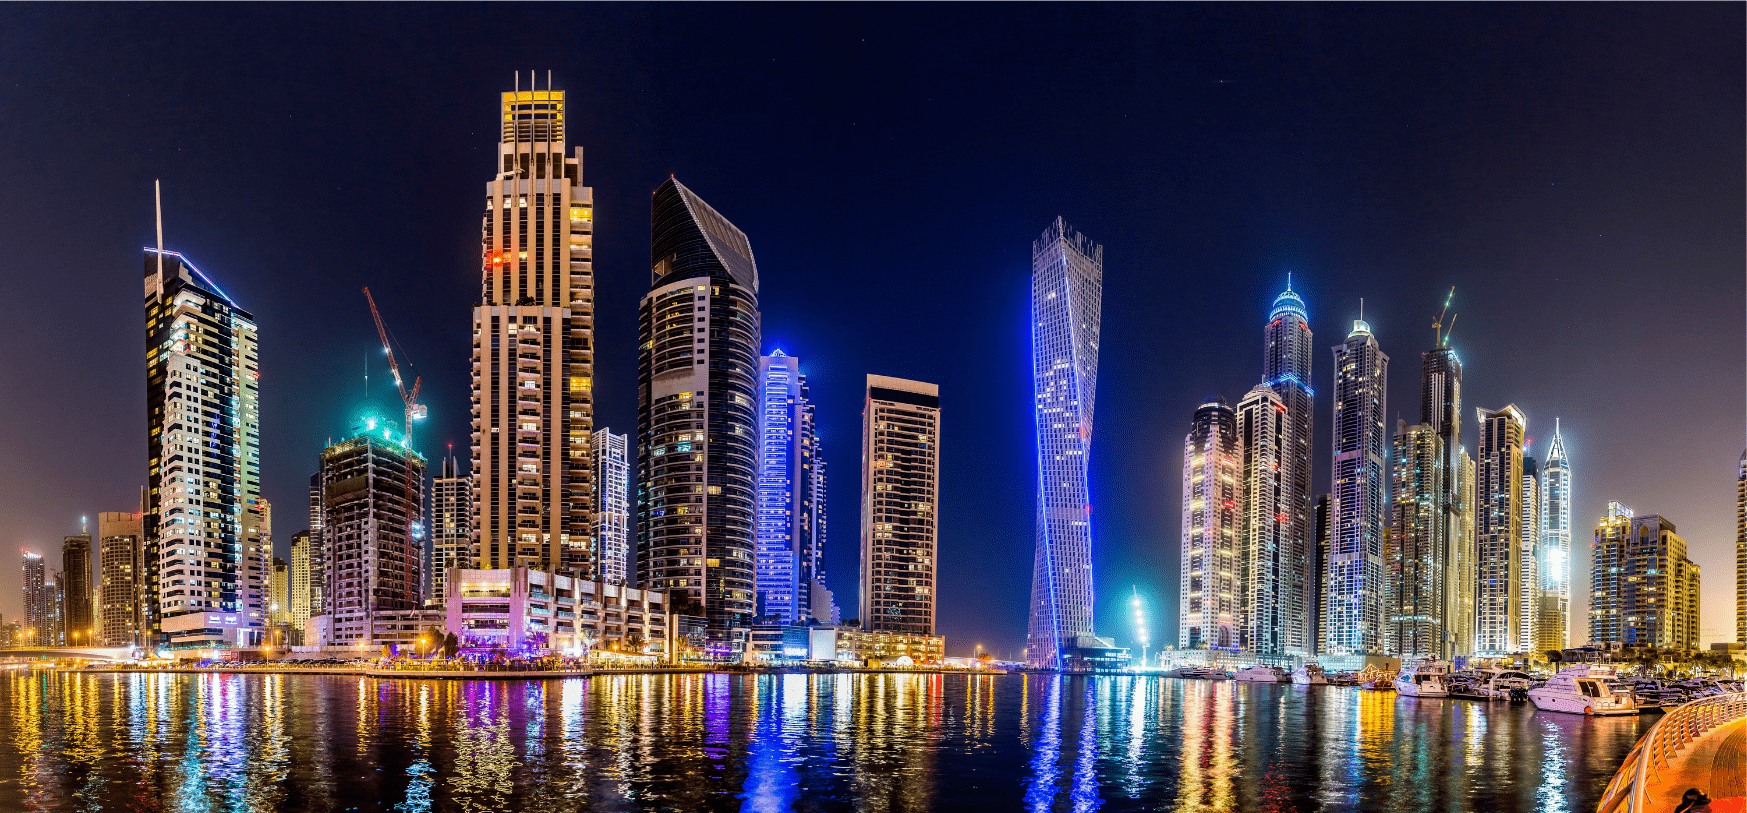 Night View Of Dubai